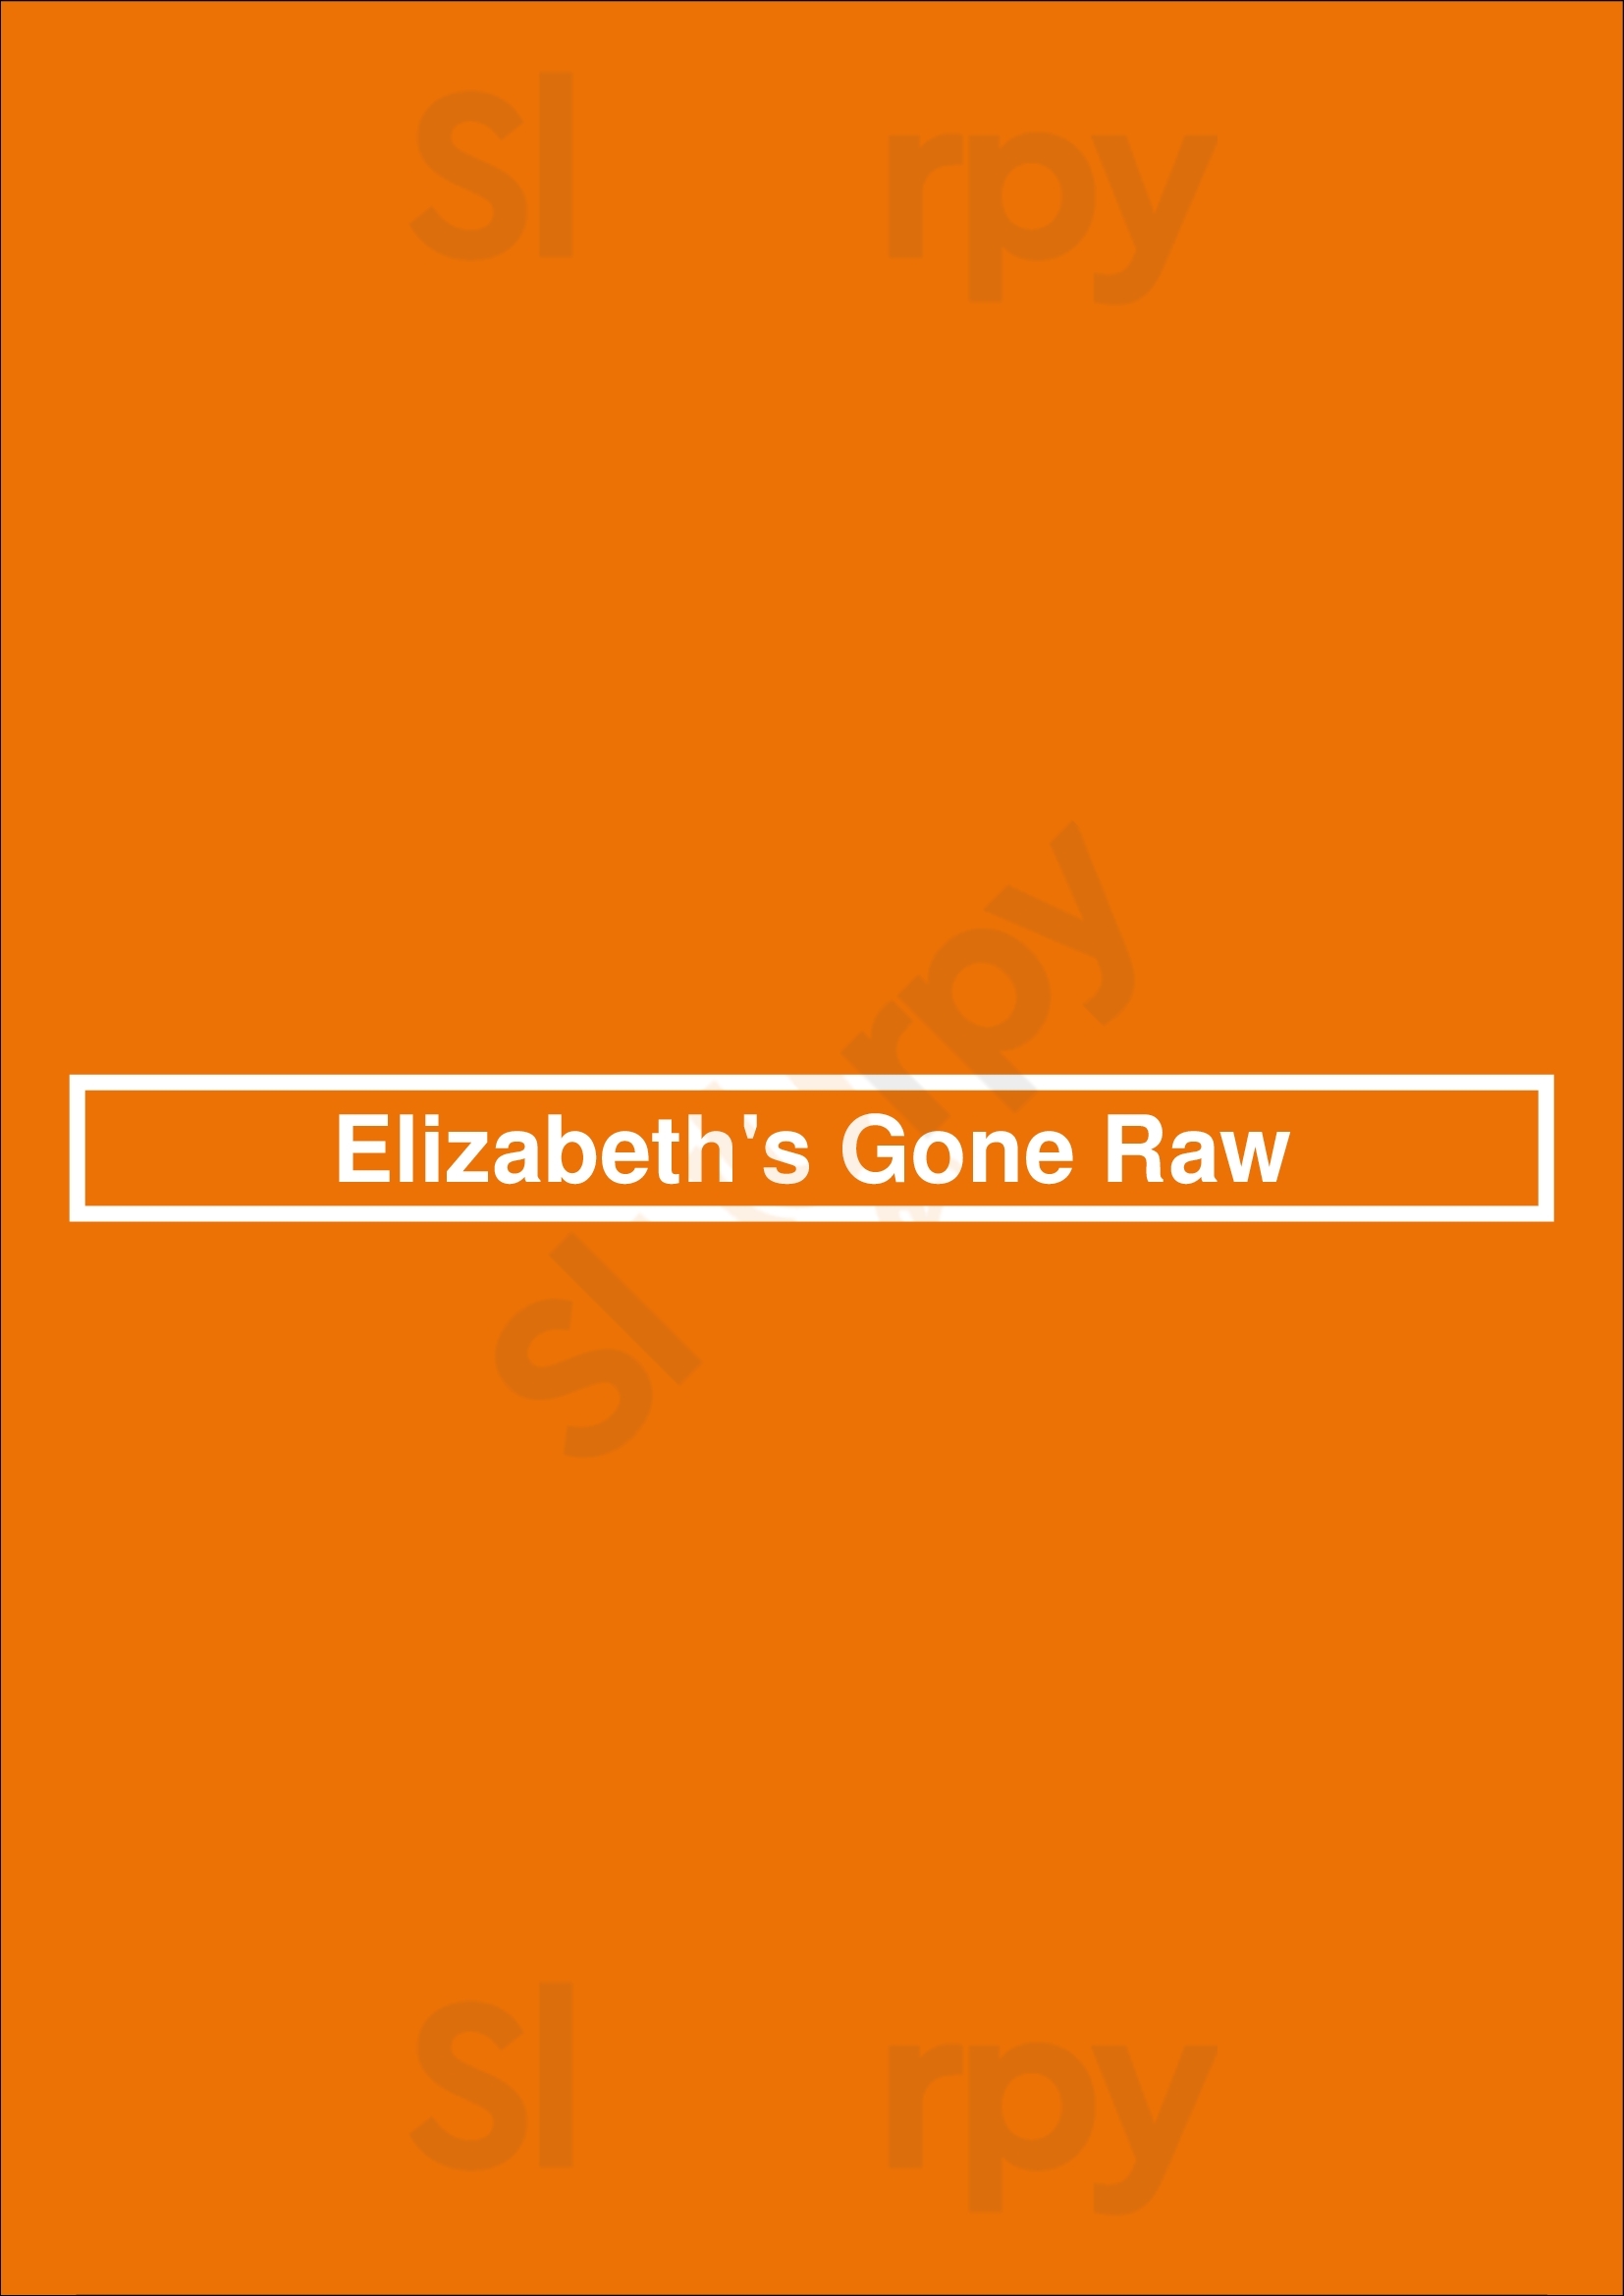 Elizabeth's Gone Raw Washington DC Menu - 1